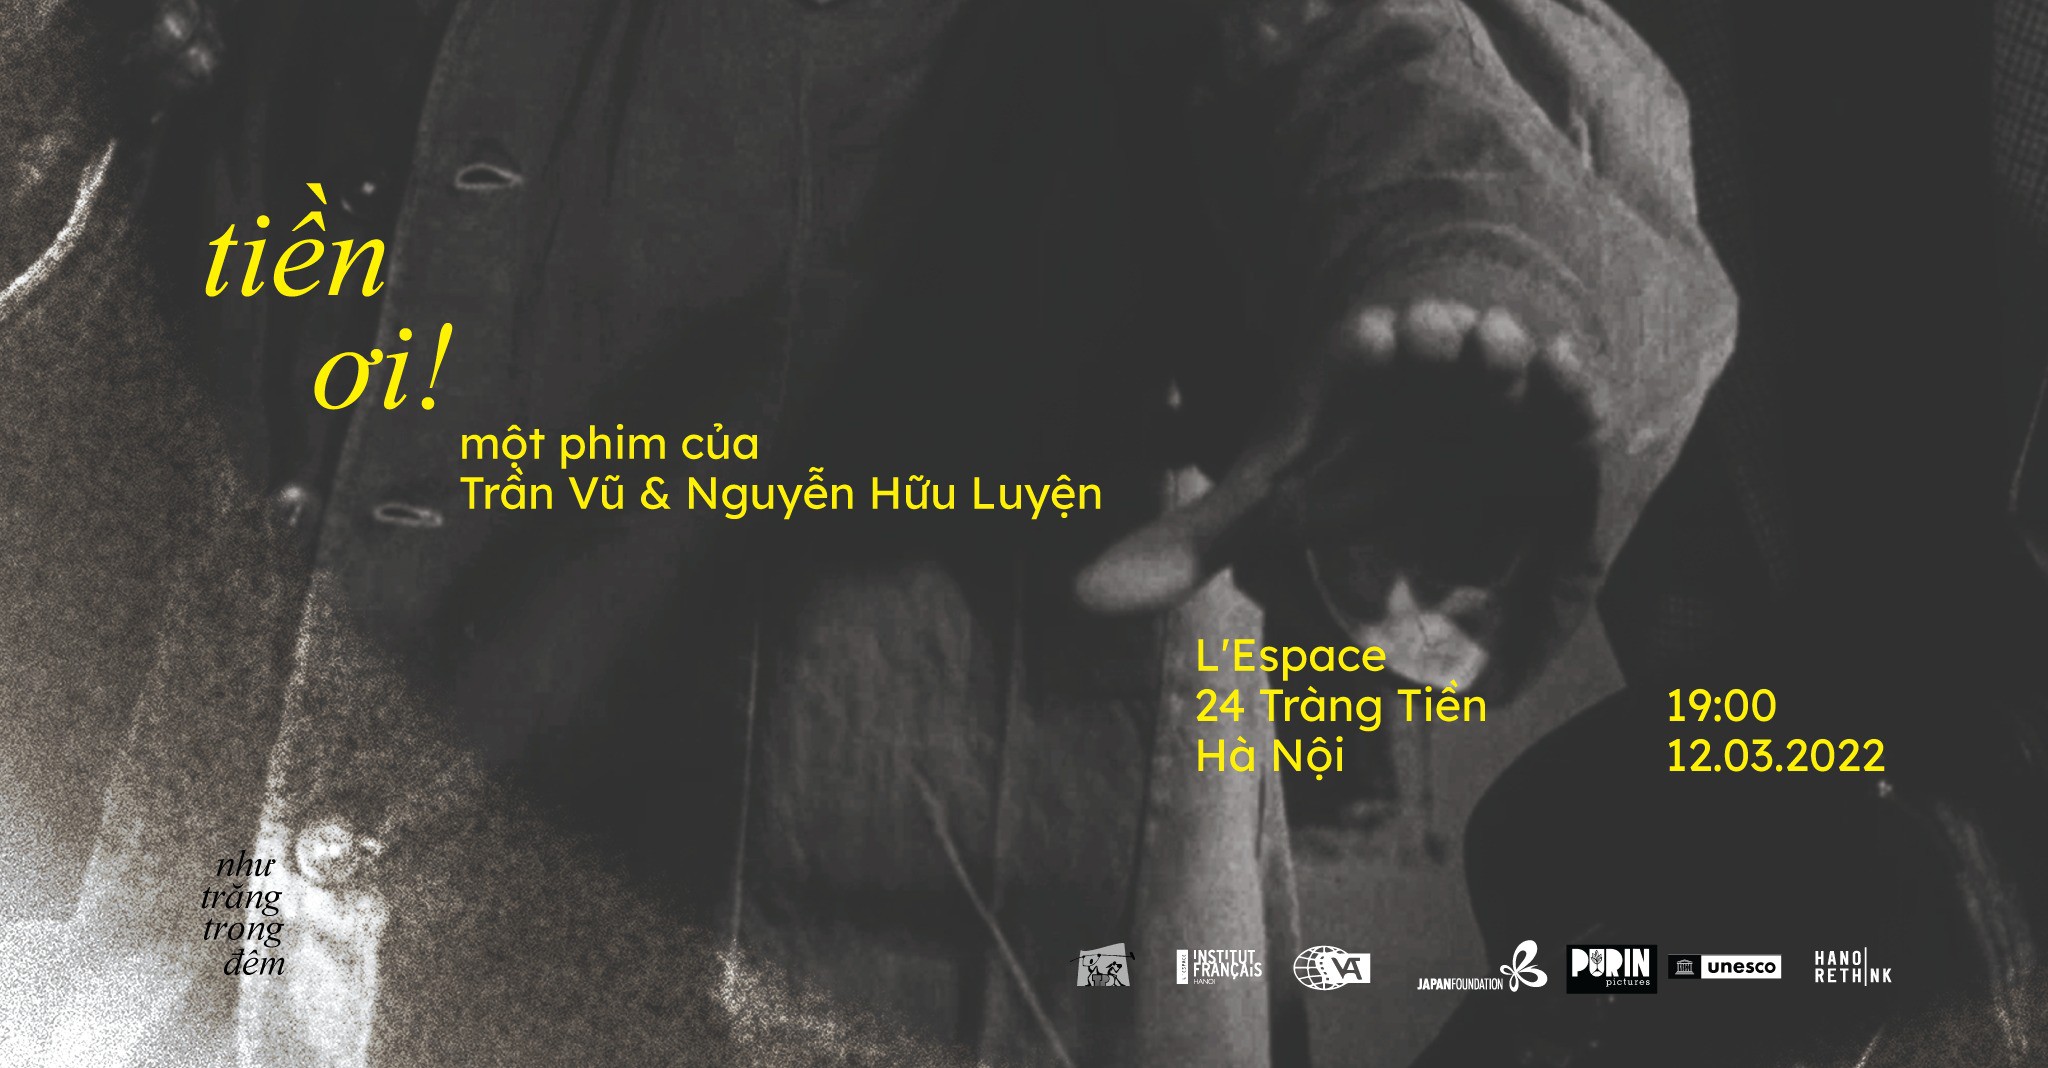 Chiếu phim miễn phí - TIỀN ƠI - Phim của Trần Vũ & Nguyễn Hữu Luyện